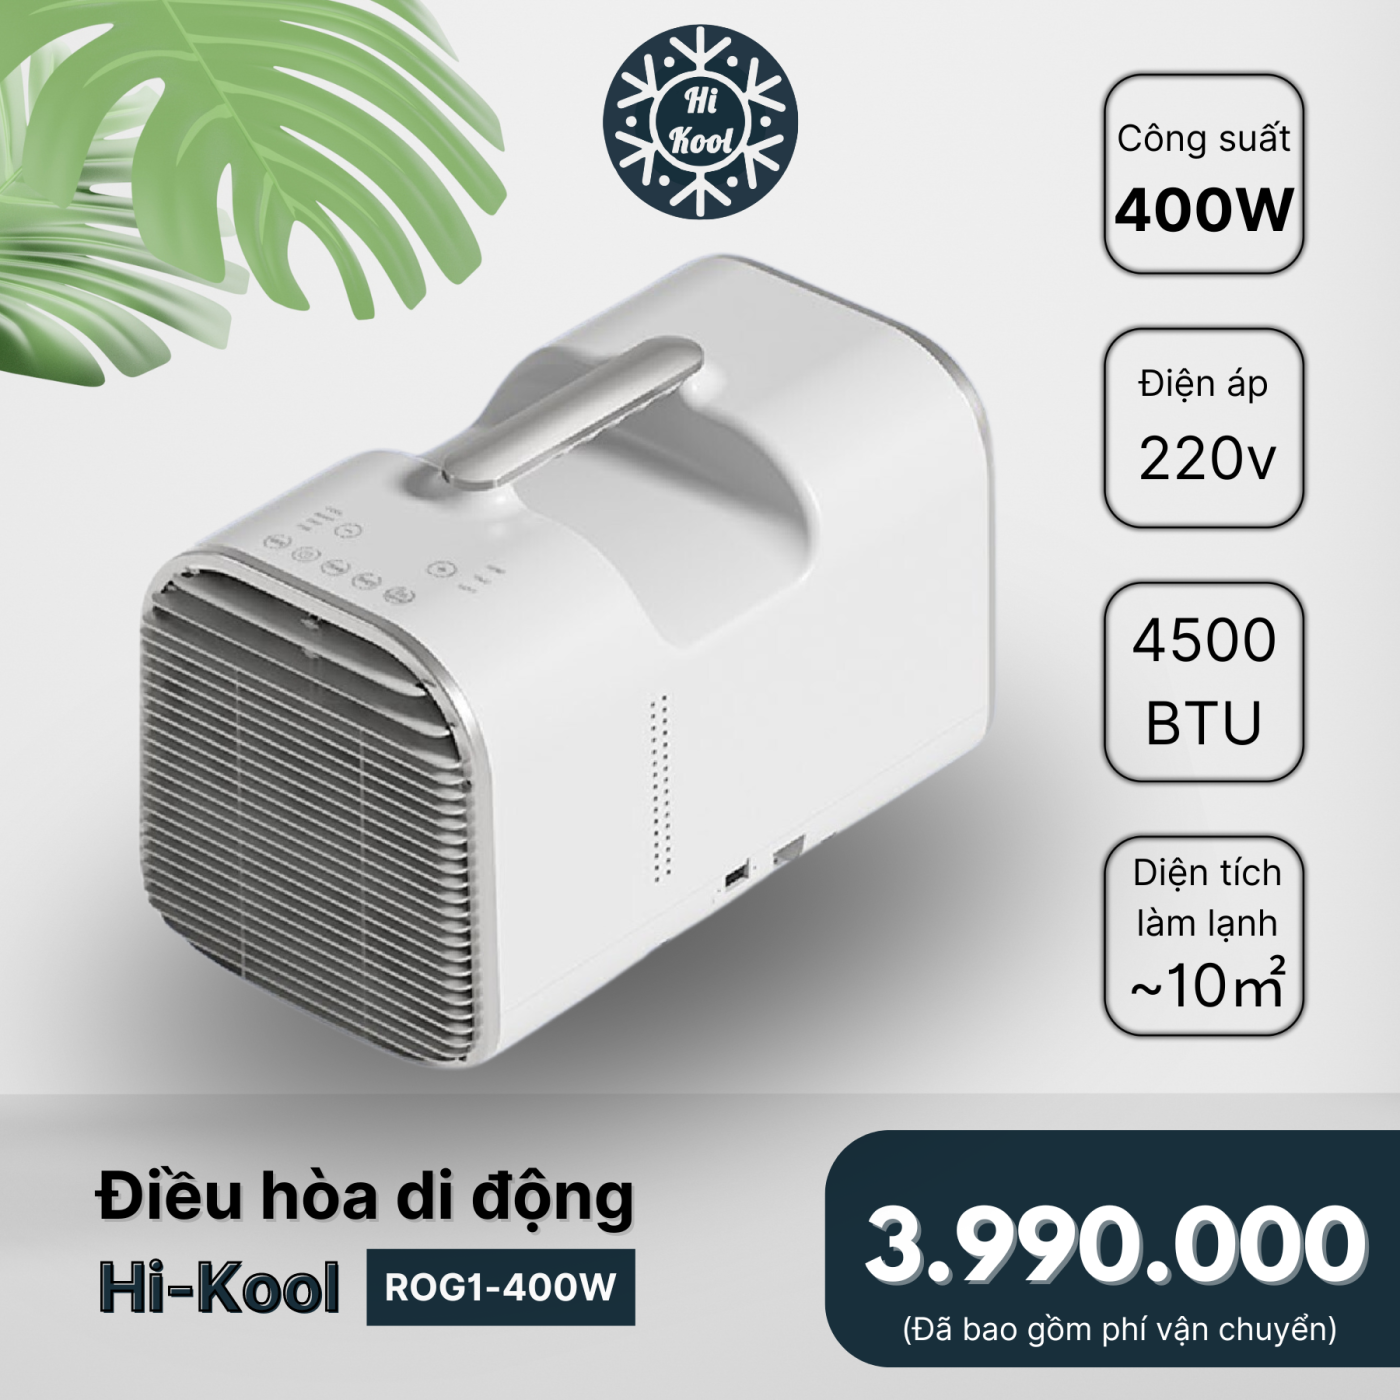 Điều Hòa Di Động Hi-Kool 400w - Làm lạnh 16 độ - Máy nén Gas R134a - Công suất 400w